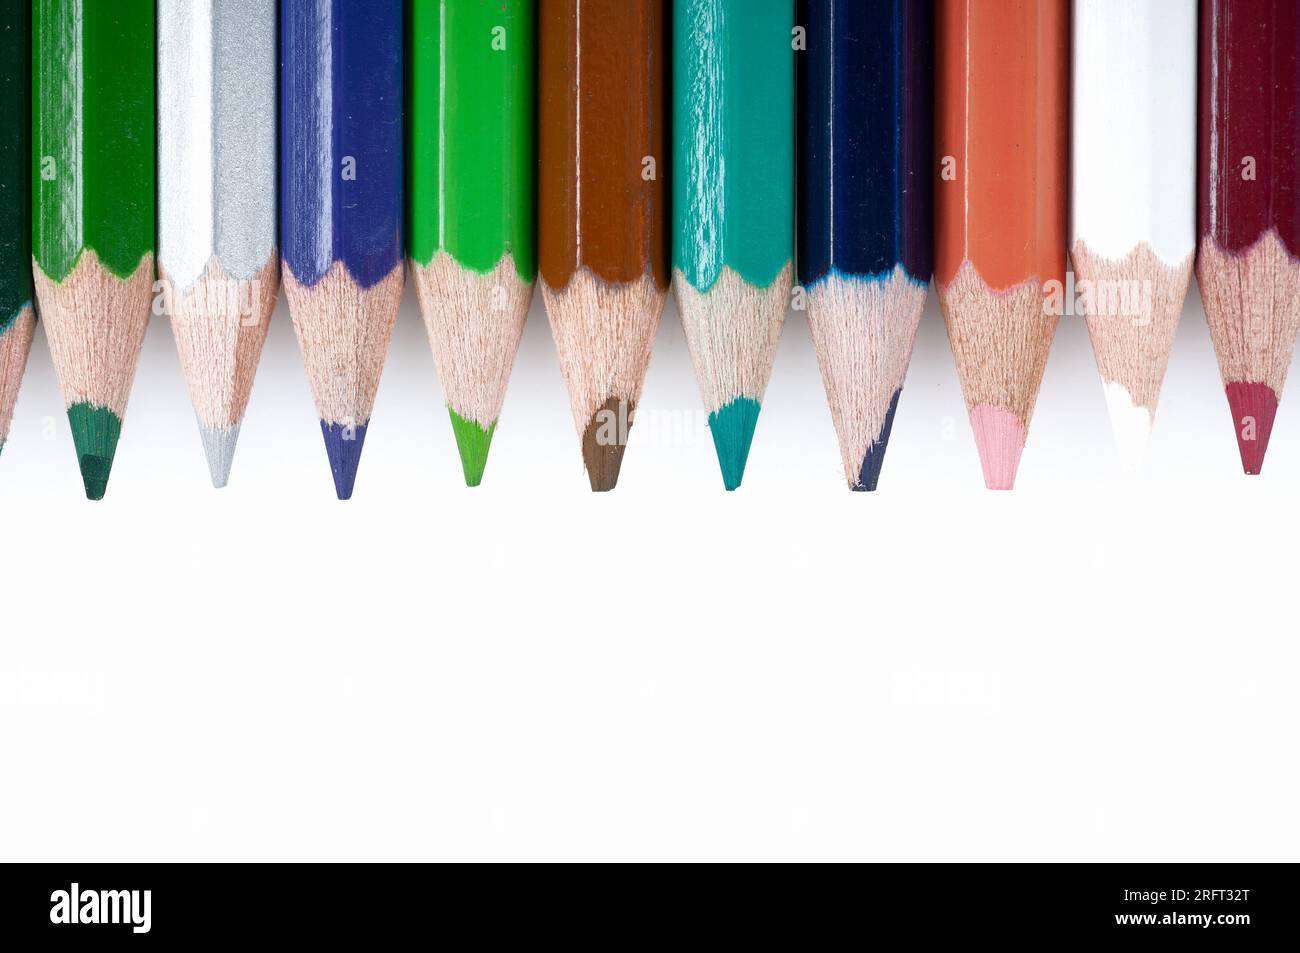 Le matite colorate sono strumenti didattici e di gioco indispensabili per bambini e studenti, così come la scrittura, il disegno e i materiali didattici utilizzati da Foto Stock